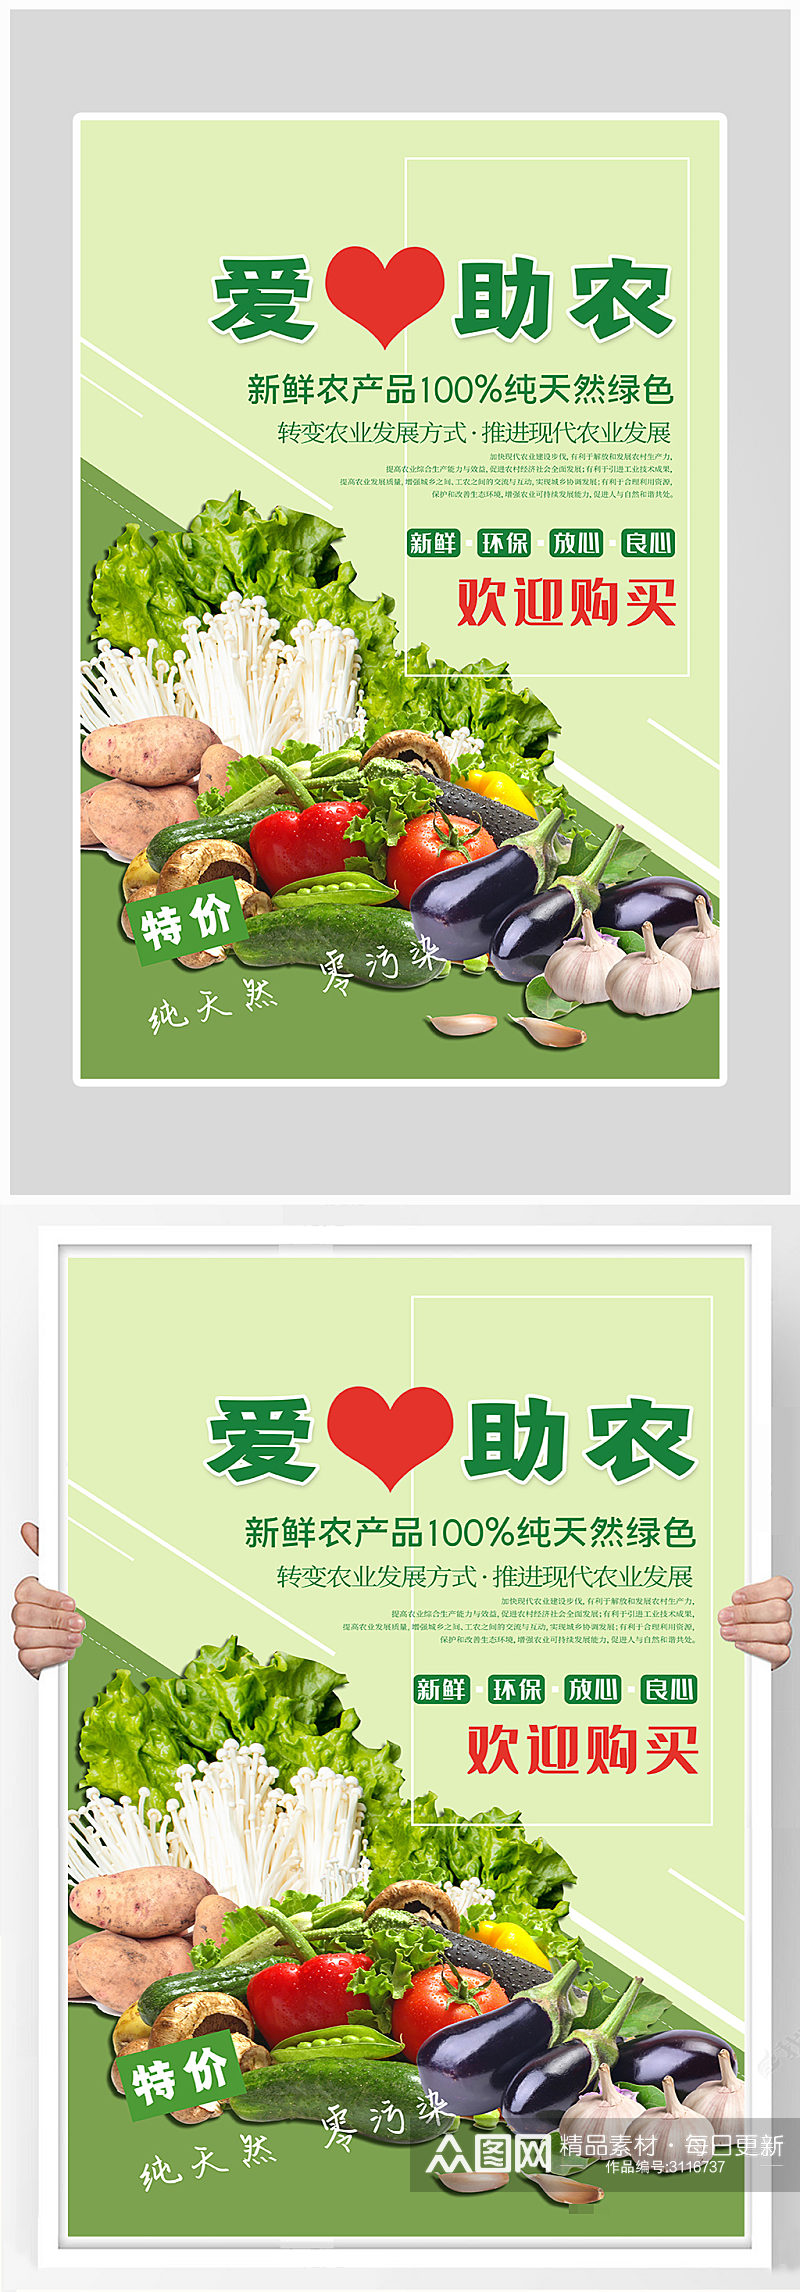 创意健康时令蔬菜海报设计素材